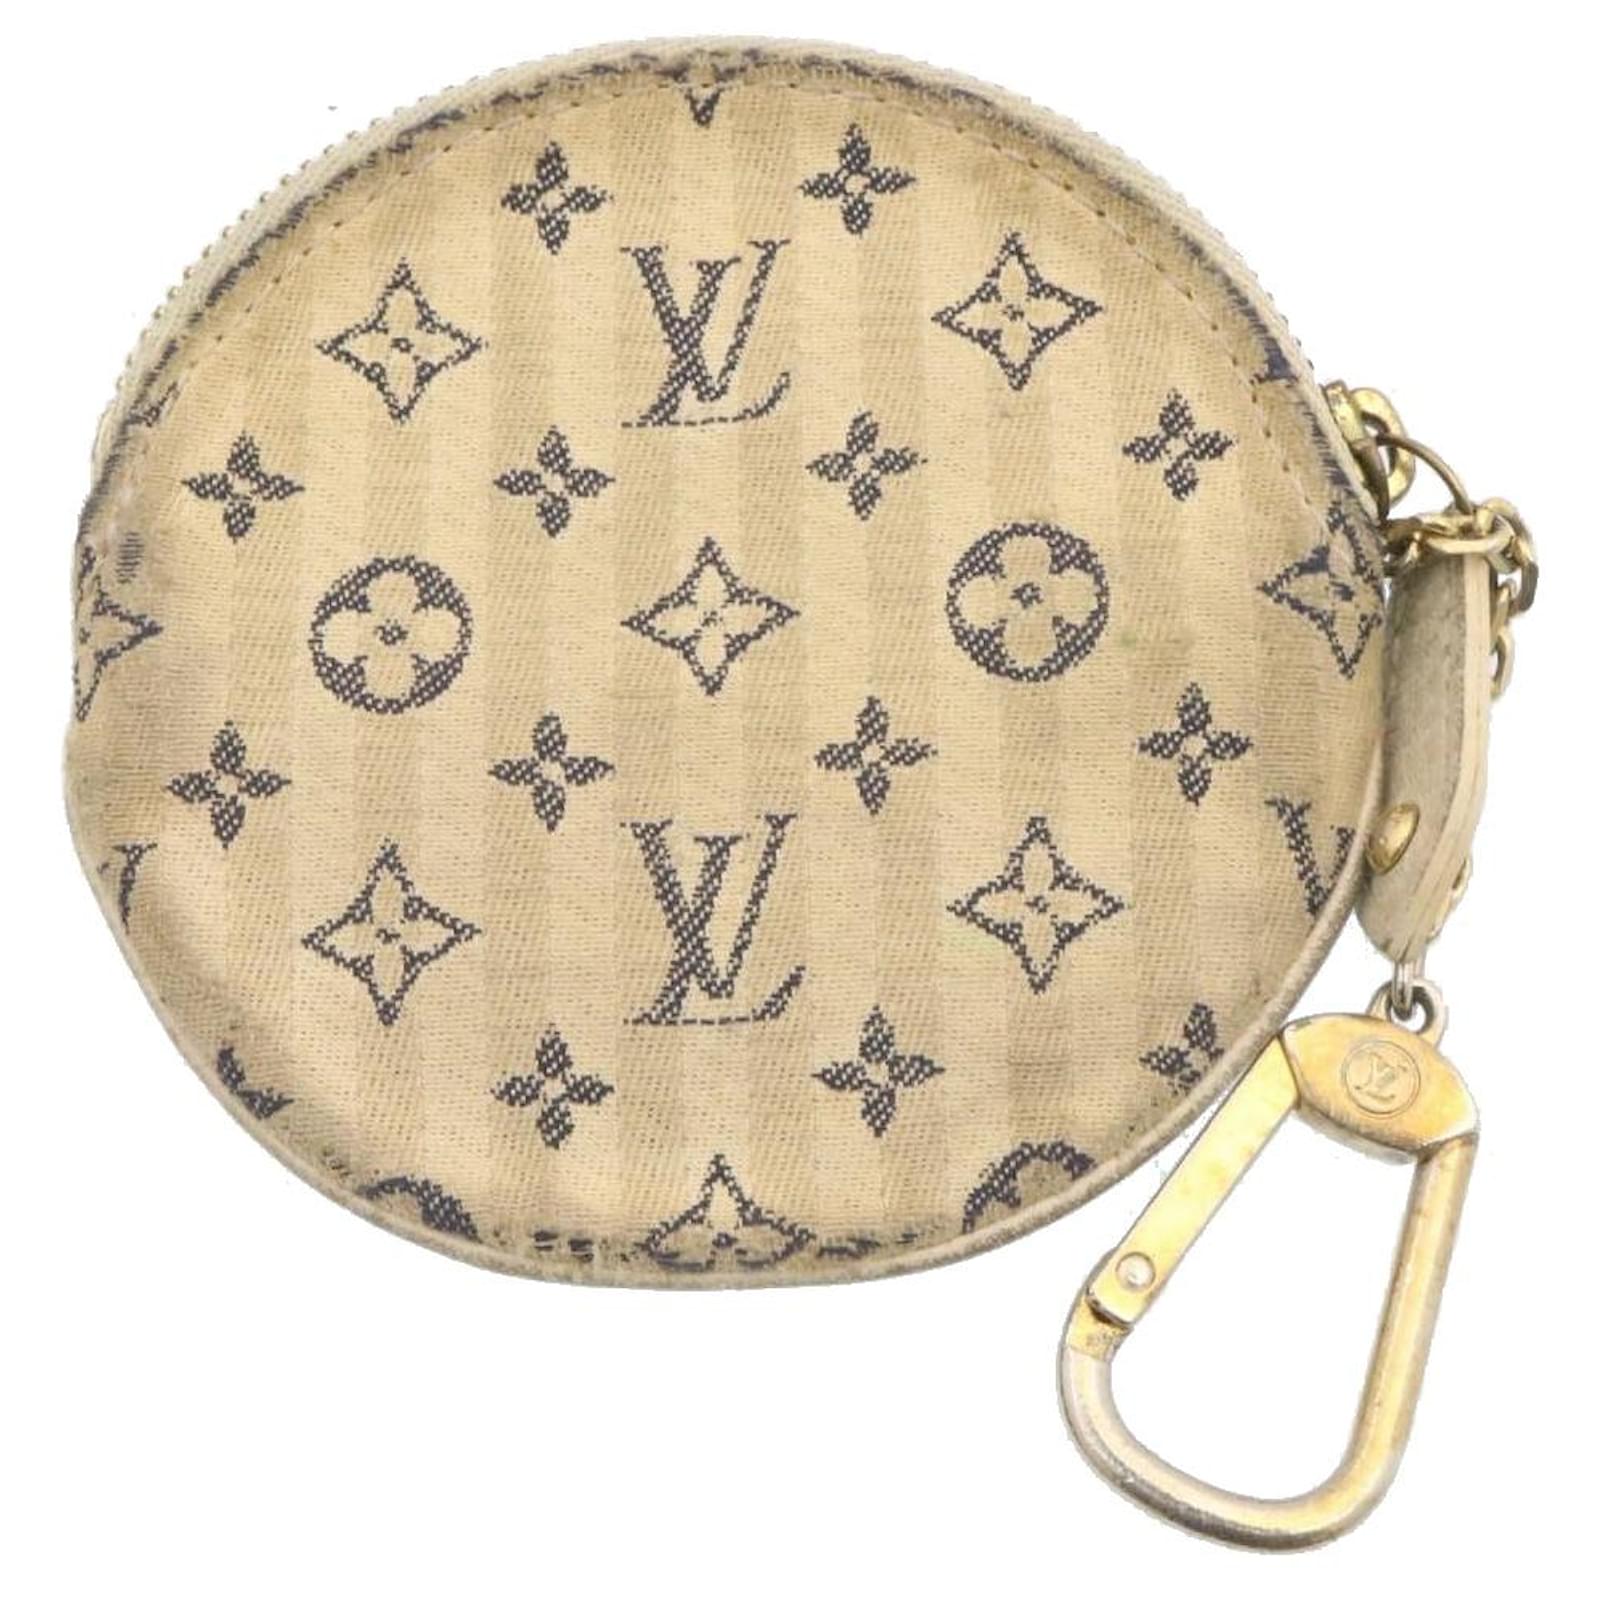 Louis Vuitton Round Coin purse Mini-Lin.